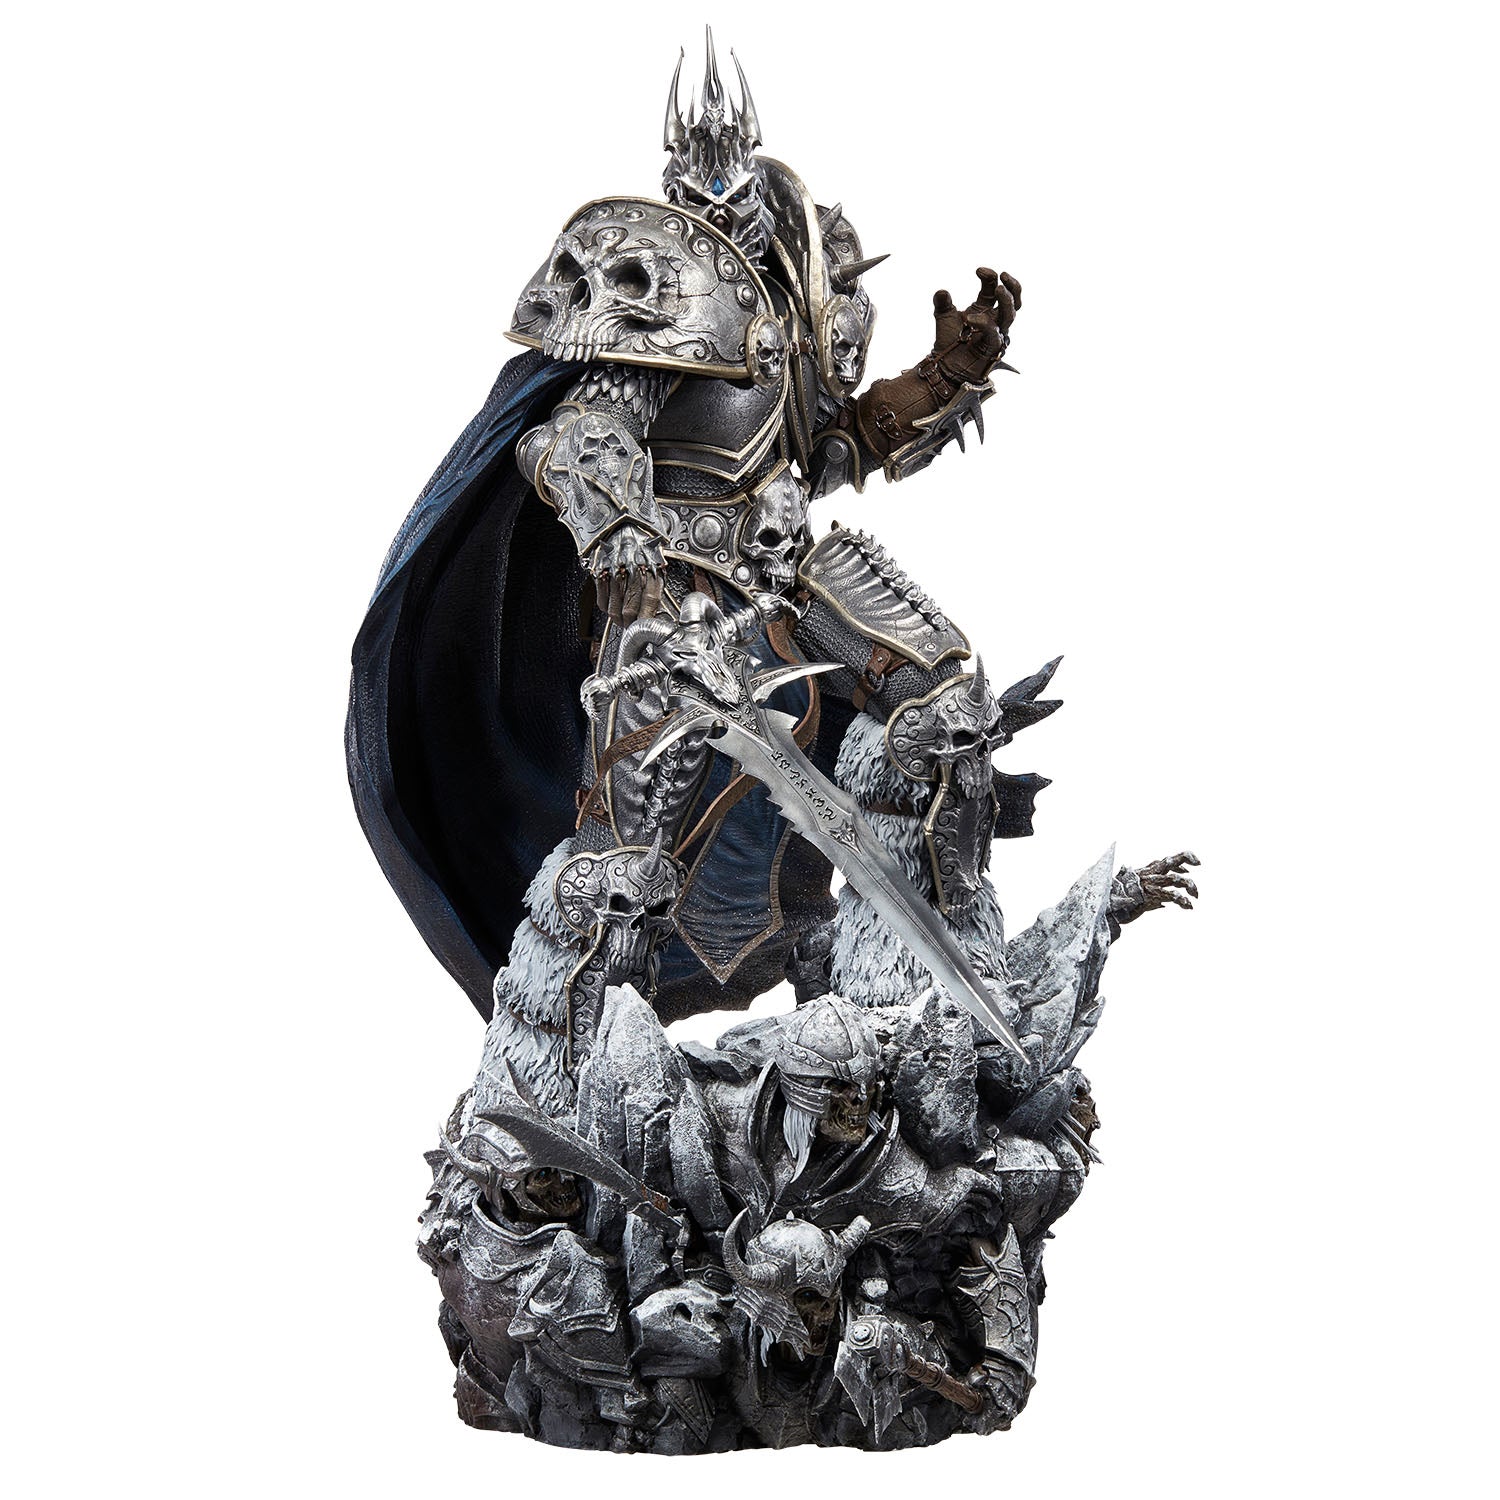 World of Warcraft Lich King Arthas Menethil 66cm Premium Statue - Front View